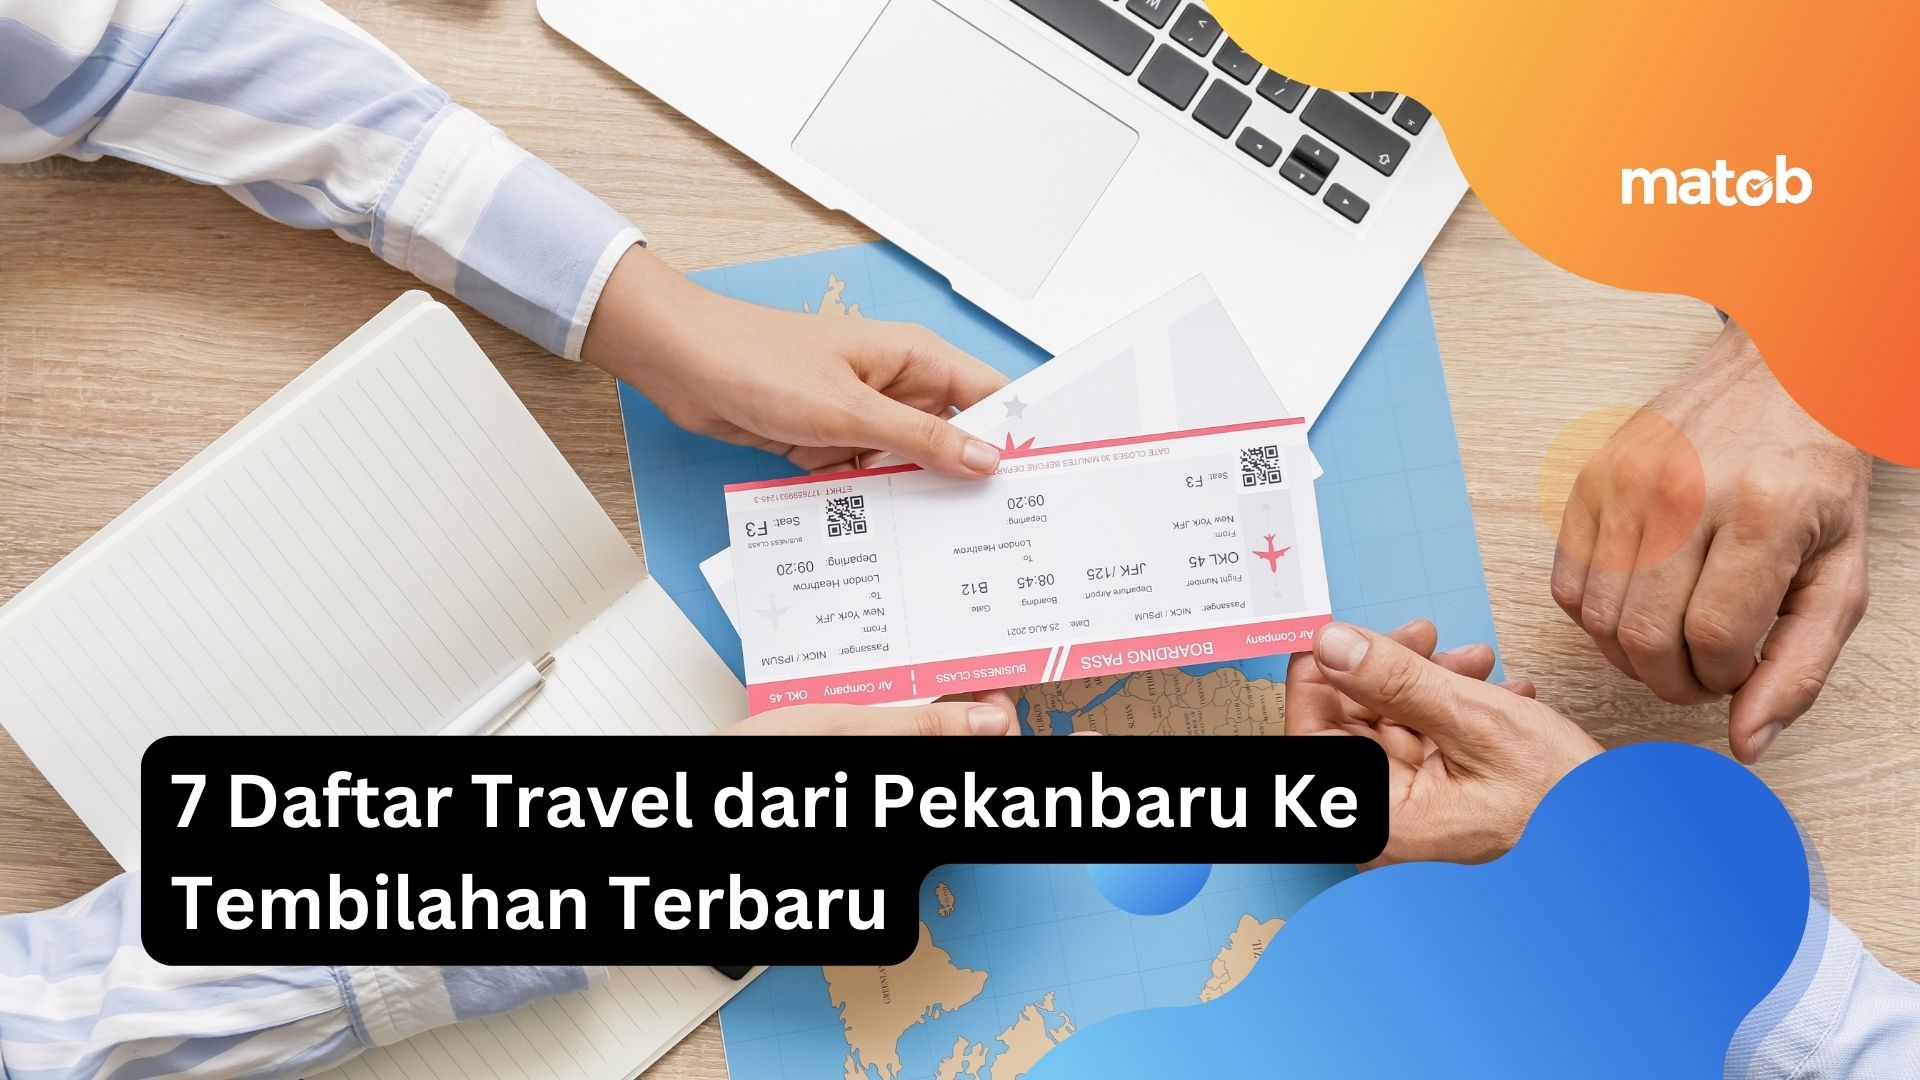 jadwal travel tembilahan ke pekanbaru